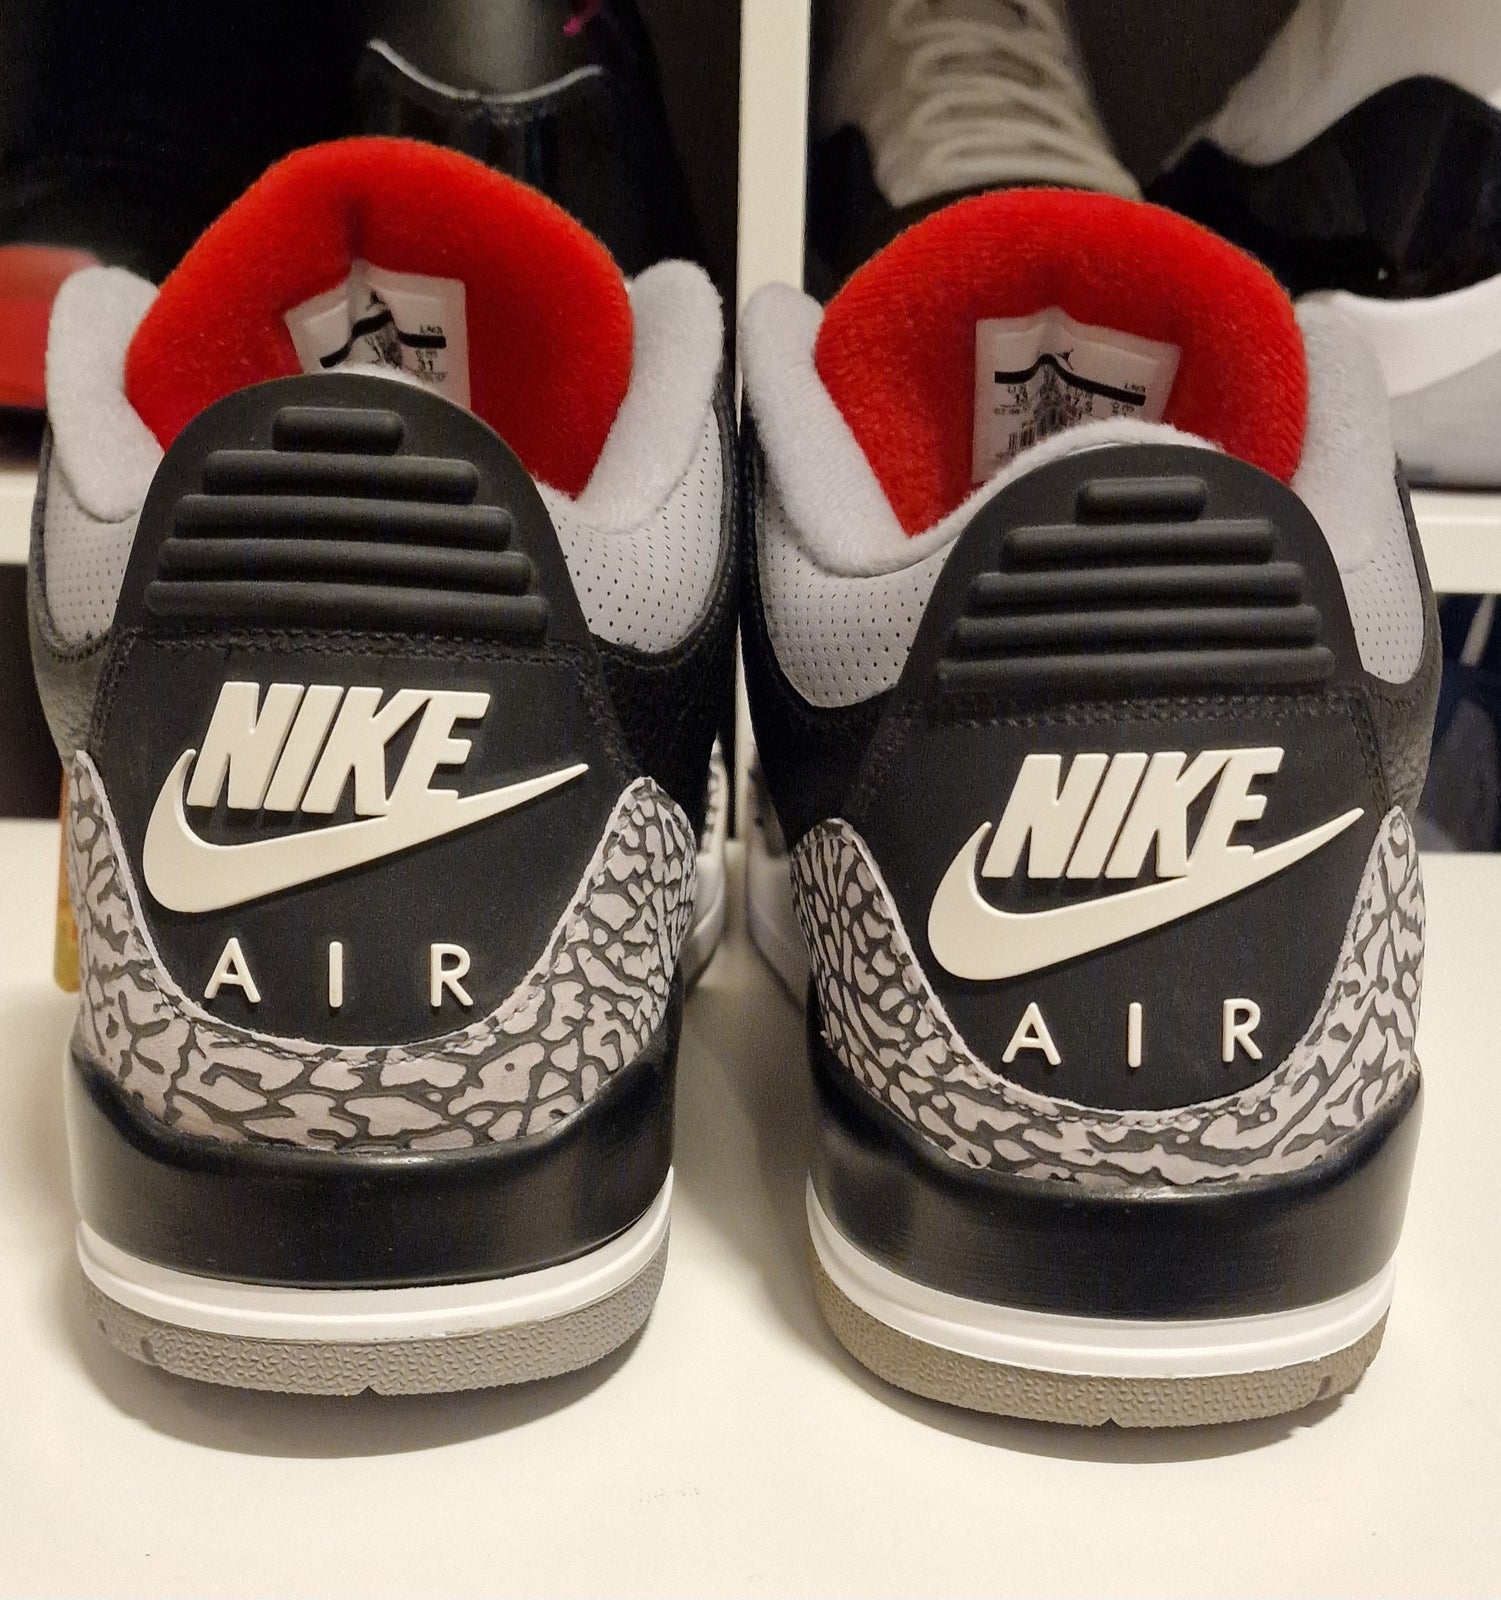 Sneakers, Air Jordan 3 Retro OG, str. 47,5